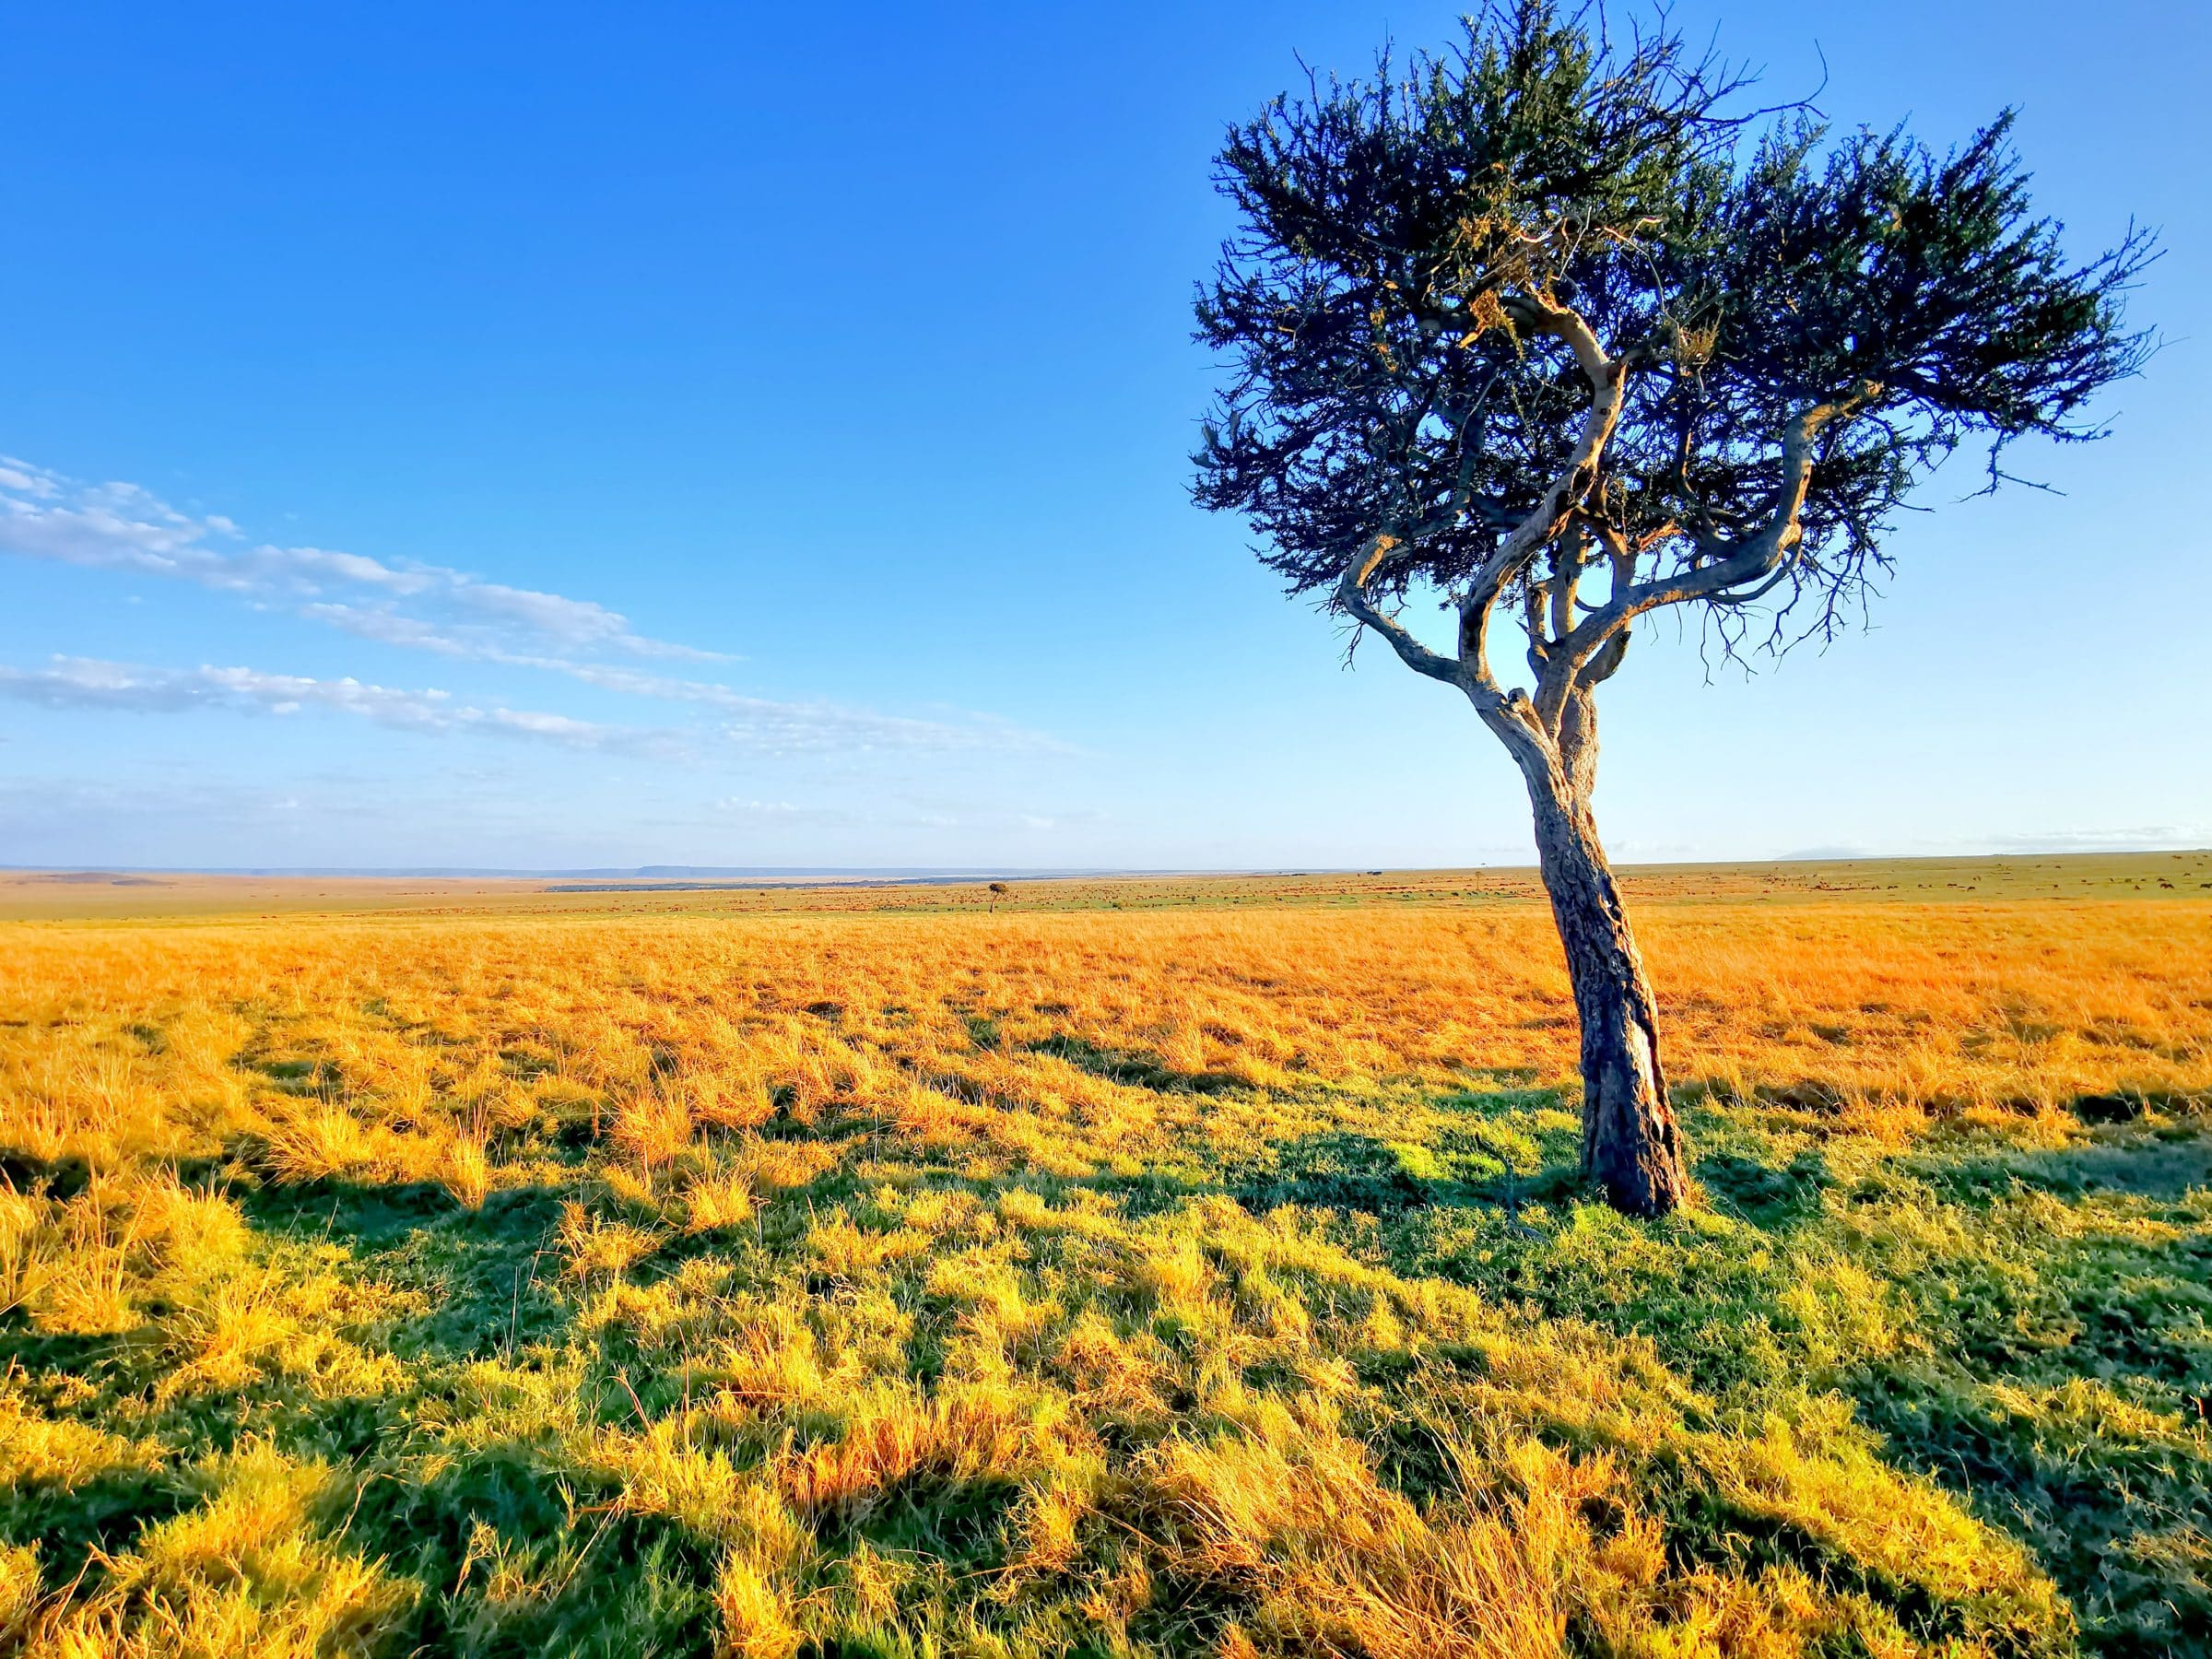 Duże równiny i „zabłąkane drzewo”. To jest obraz, który często widuje się w Masai Mara i Serengeti